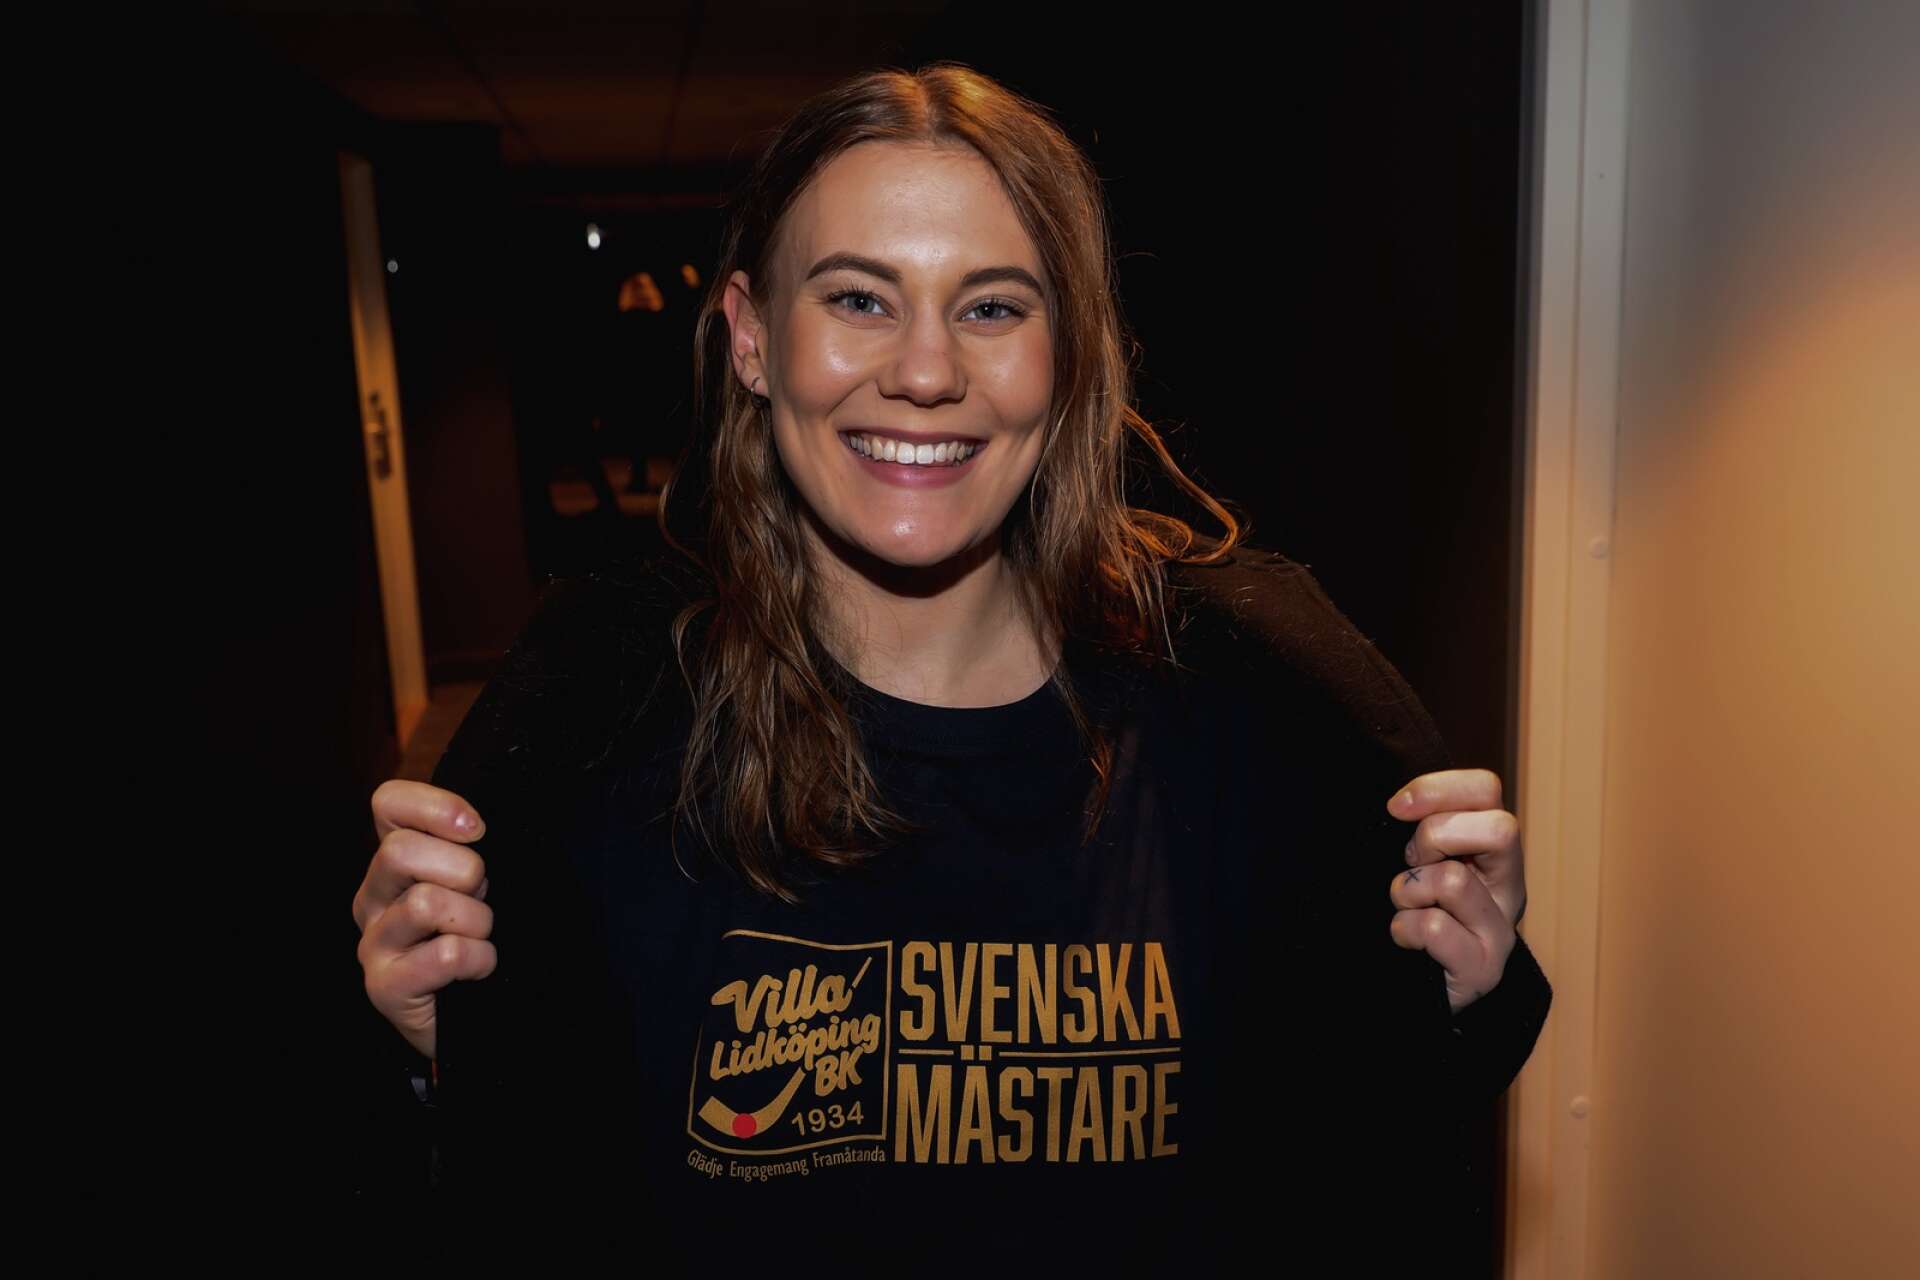 Frida Wiklund är Svensk mästare.